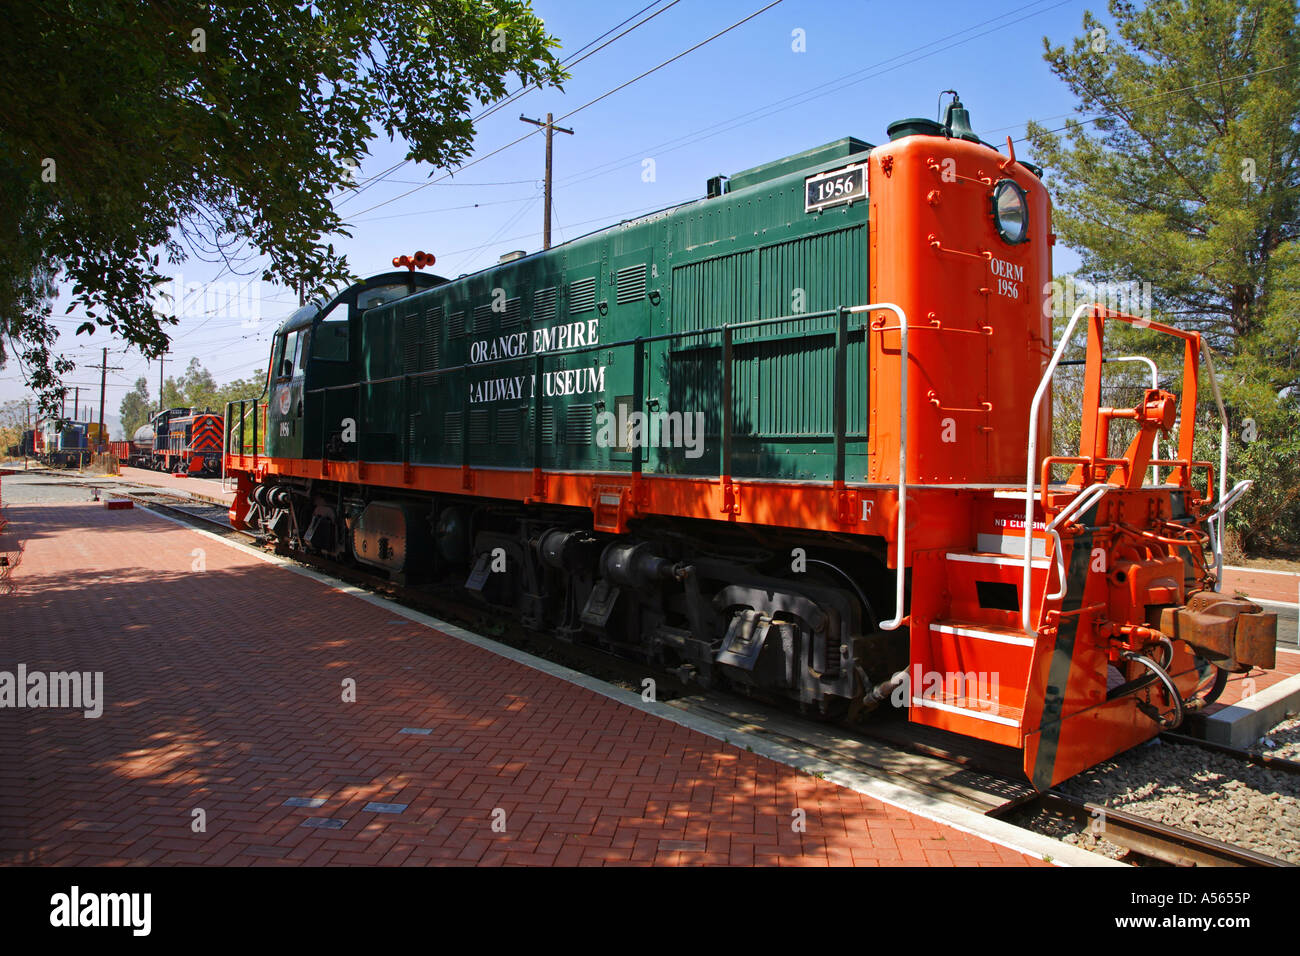 Züge auf der Orange Empire Railway Museum Perris Riverside County Kalifornien Vereinigte Staaten Stockfoto